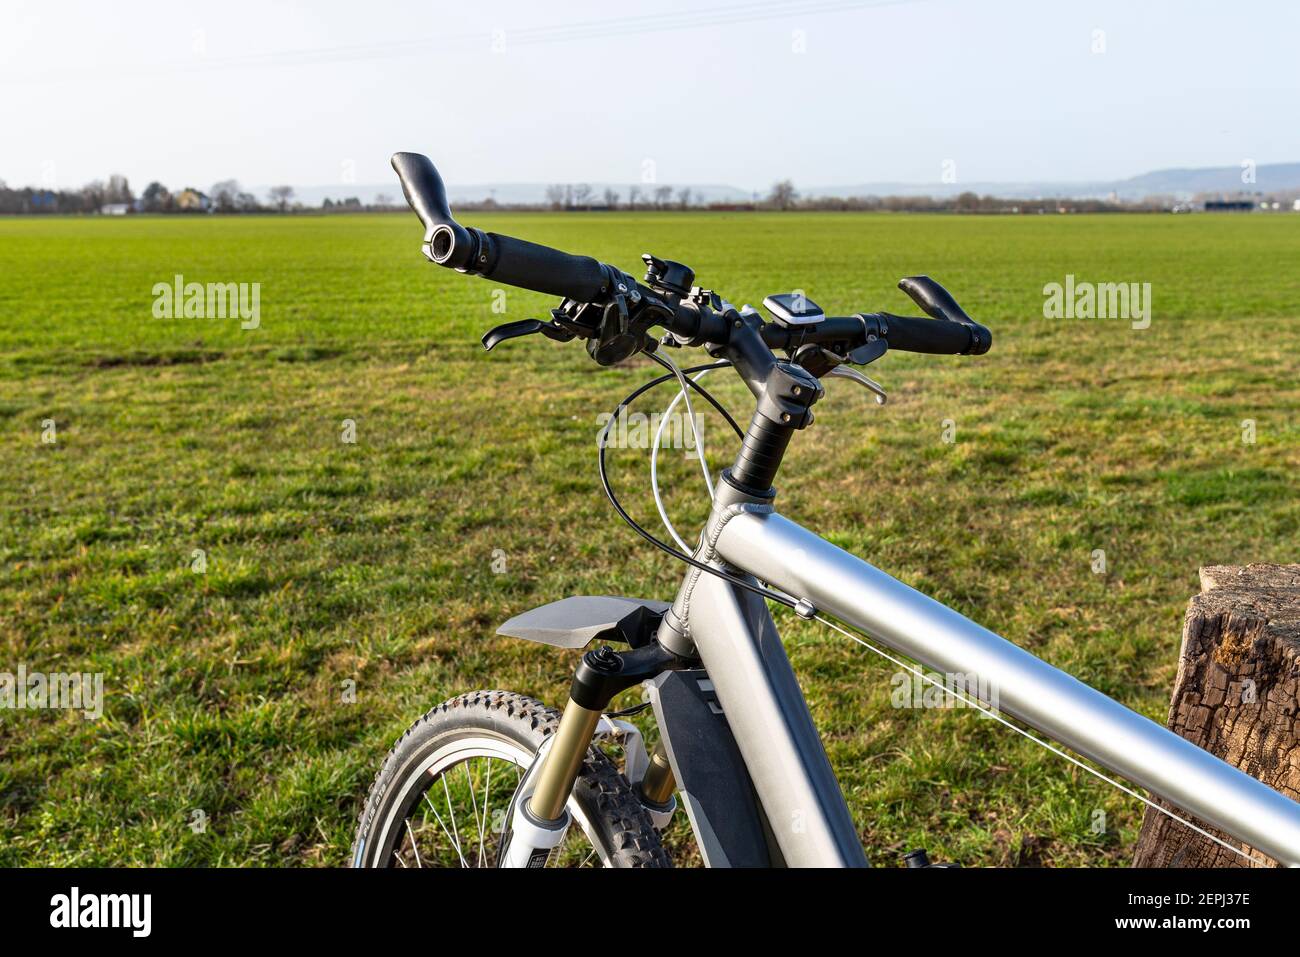 Ein Fahrradlenker aus der Perspektive der ersten Person. Sichtbarer  Fahrradrahmen und Fahrradzubehör am Lenker und am Feld im Rückenbereich  Stockfotografie - Alamy